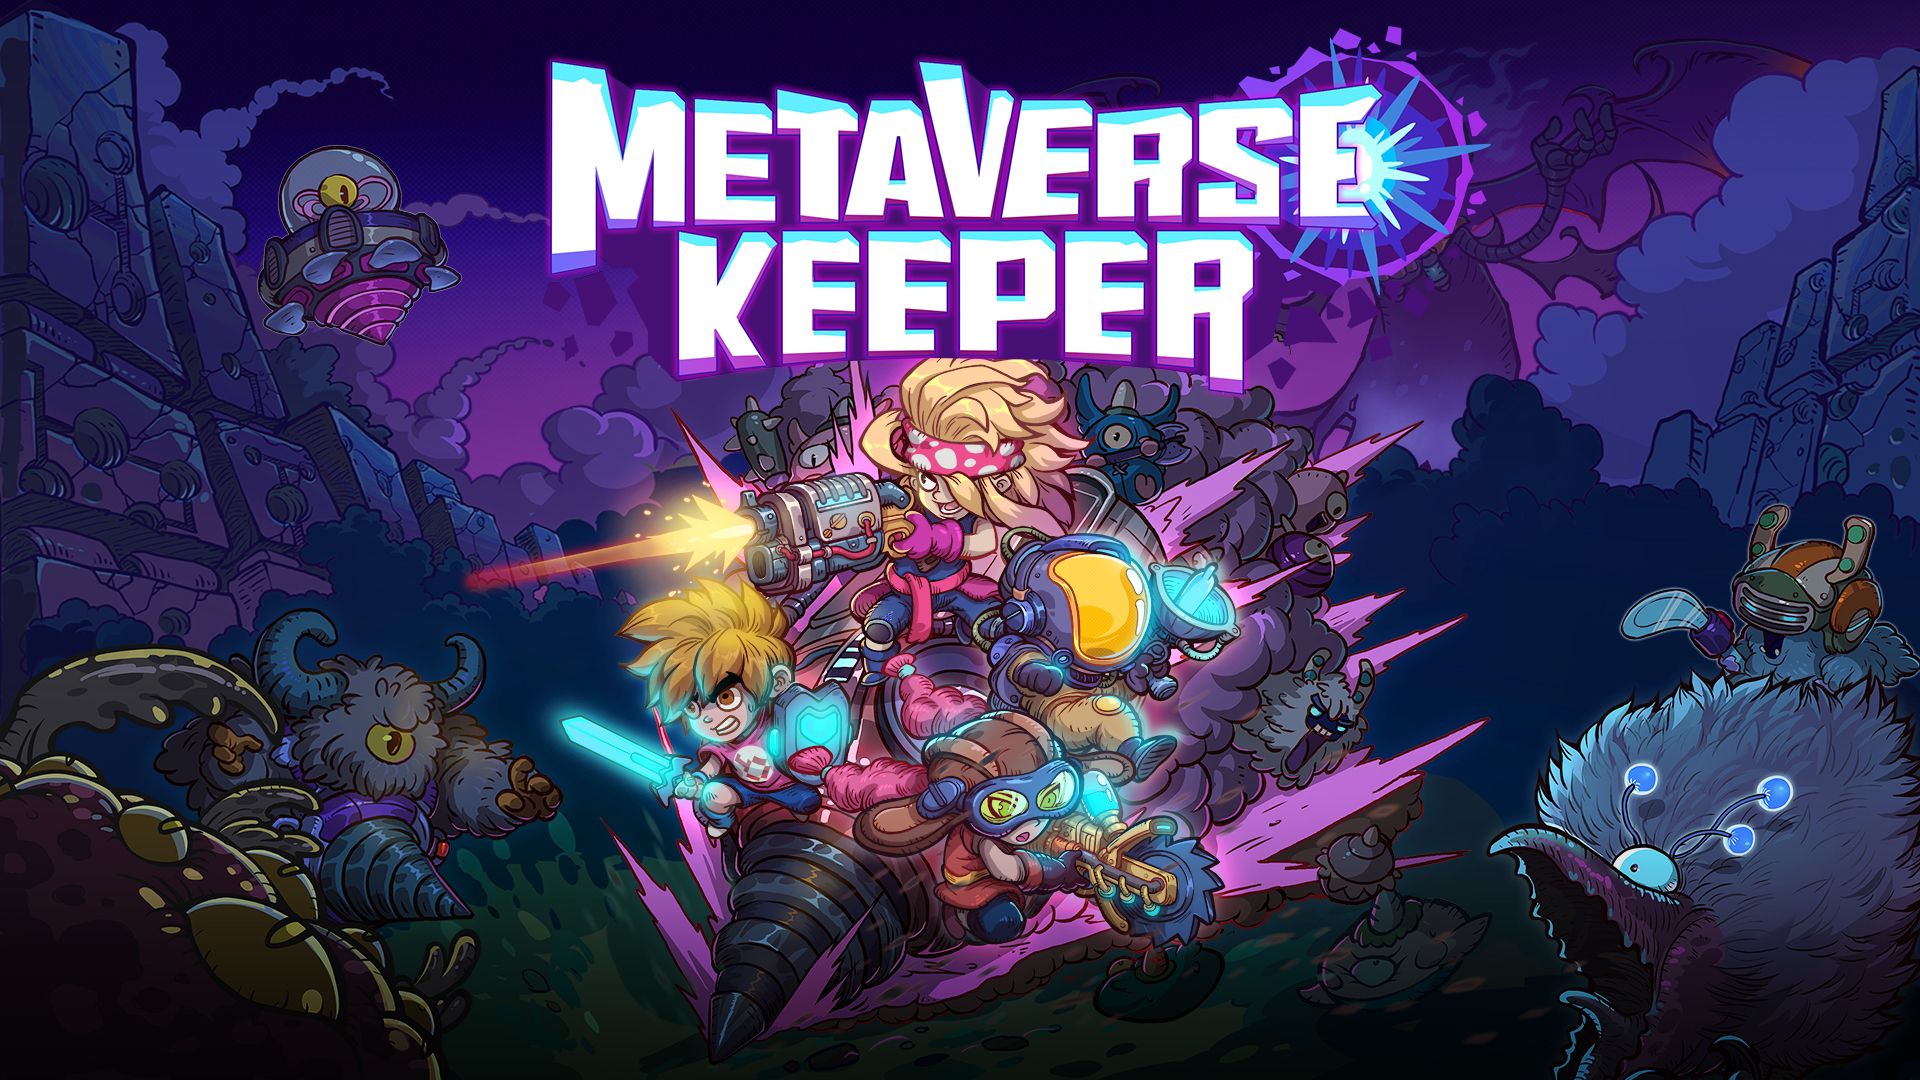 Metaverse Keeper Nintendo Switch EShop Download